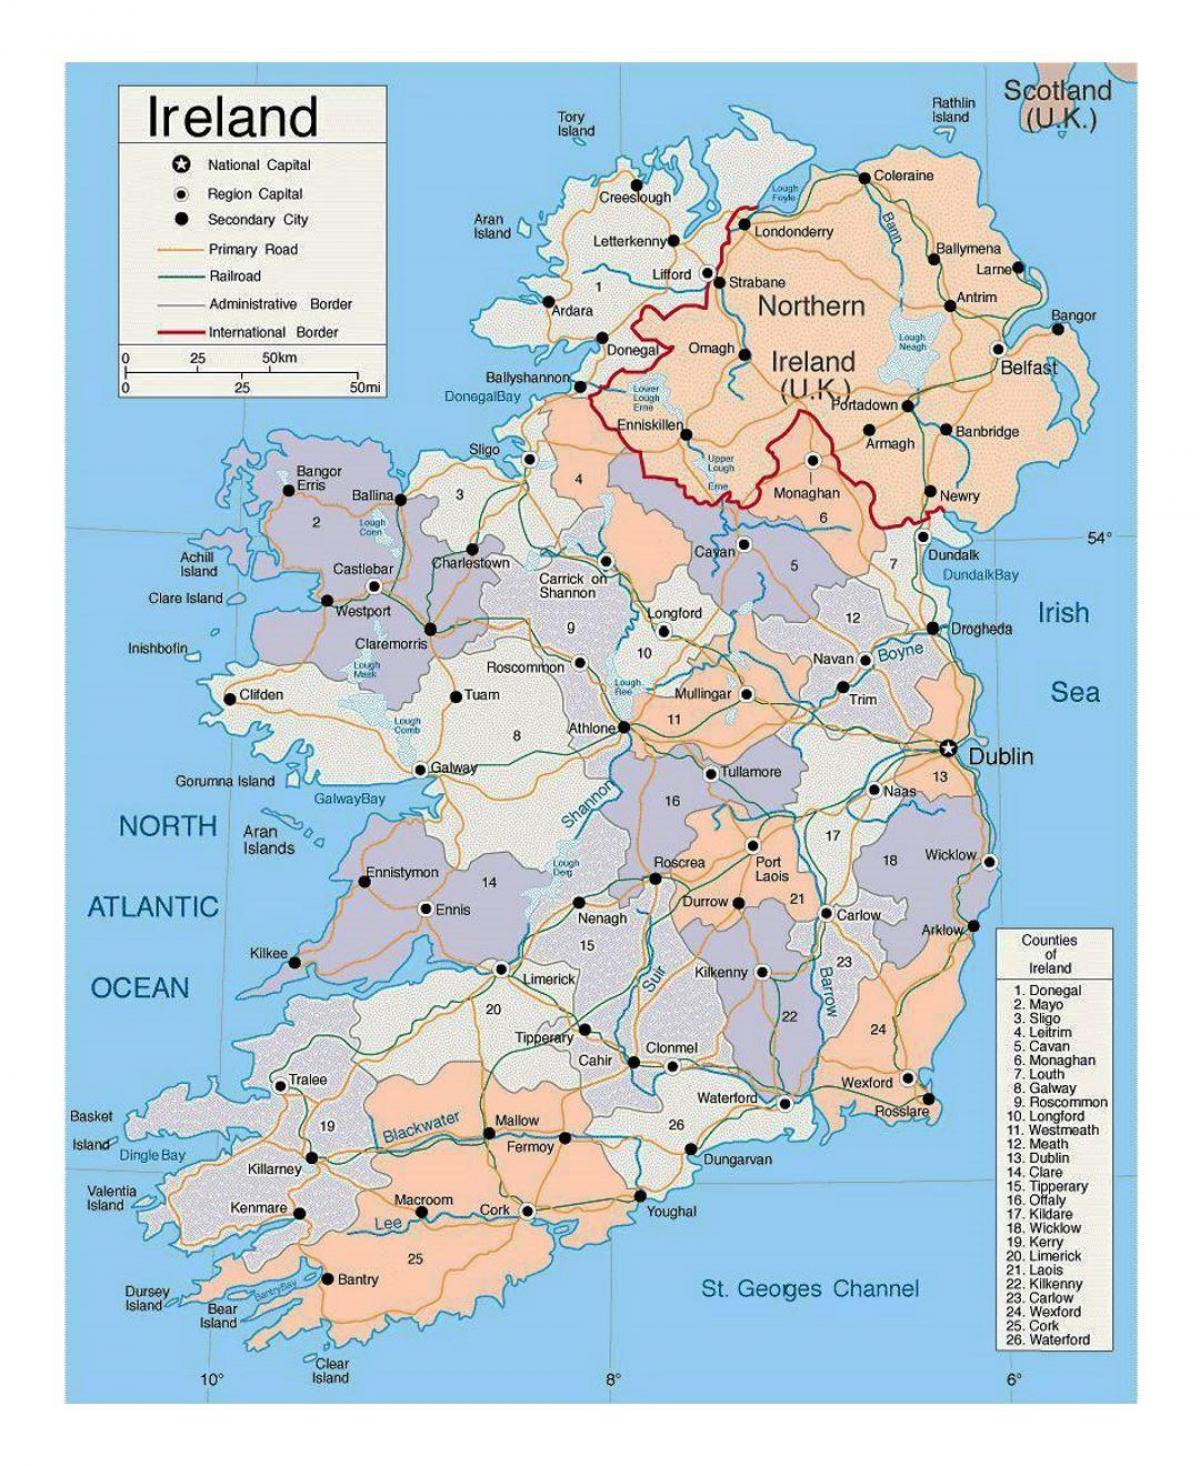 kort over irland med byer